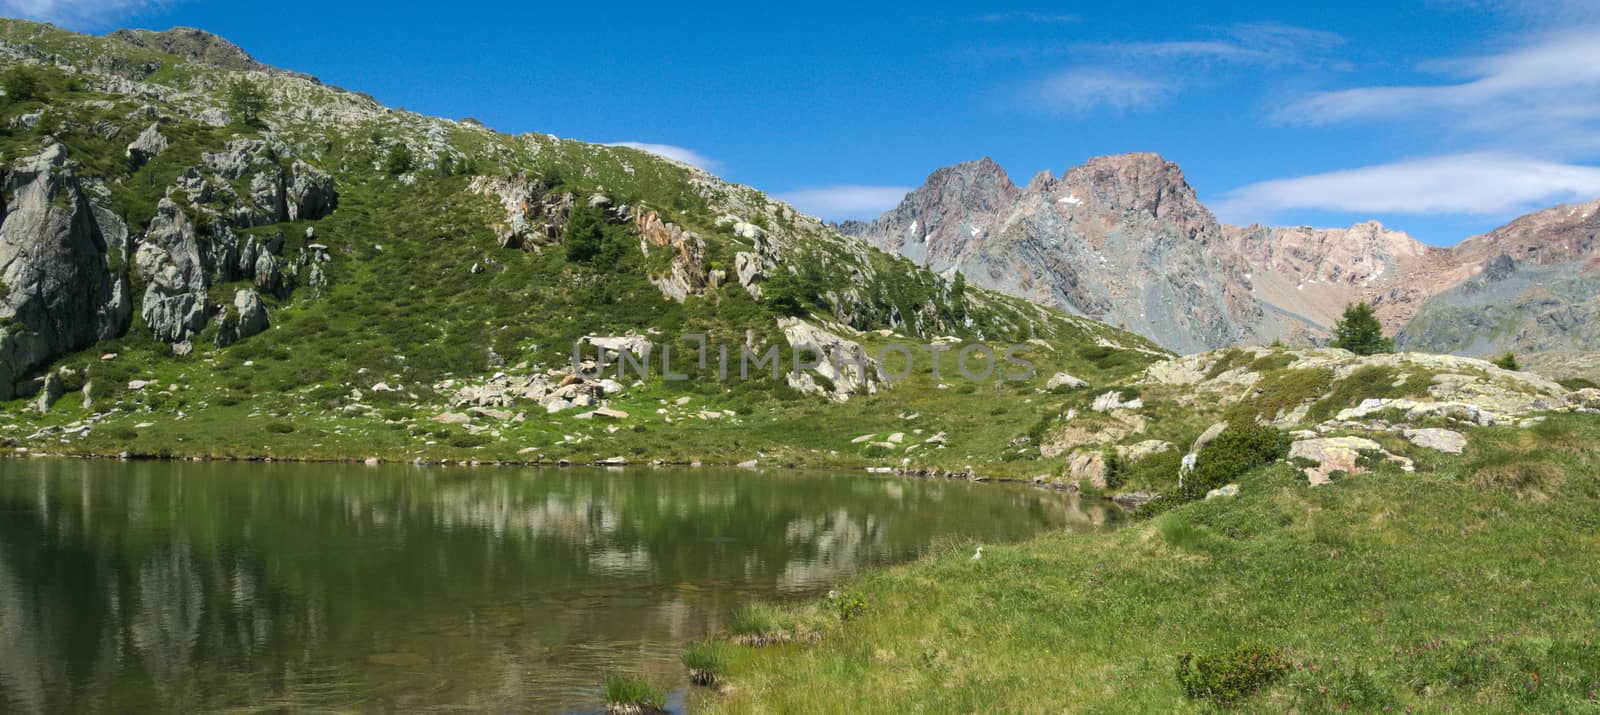 Small lake on the Italian alps in Valmalenco
